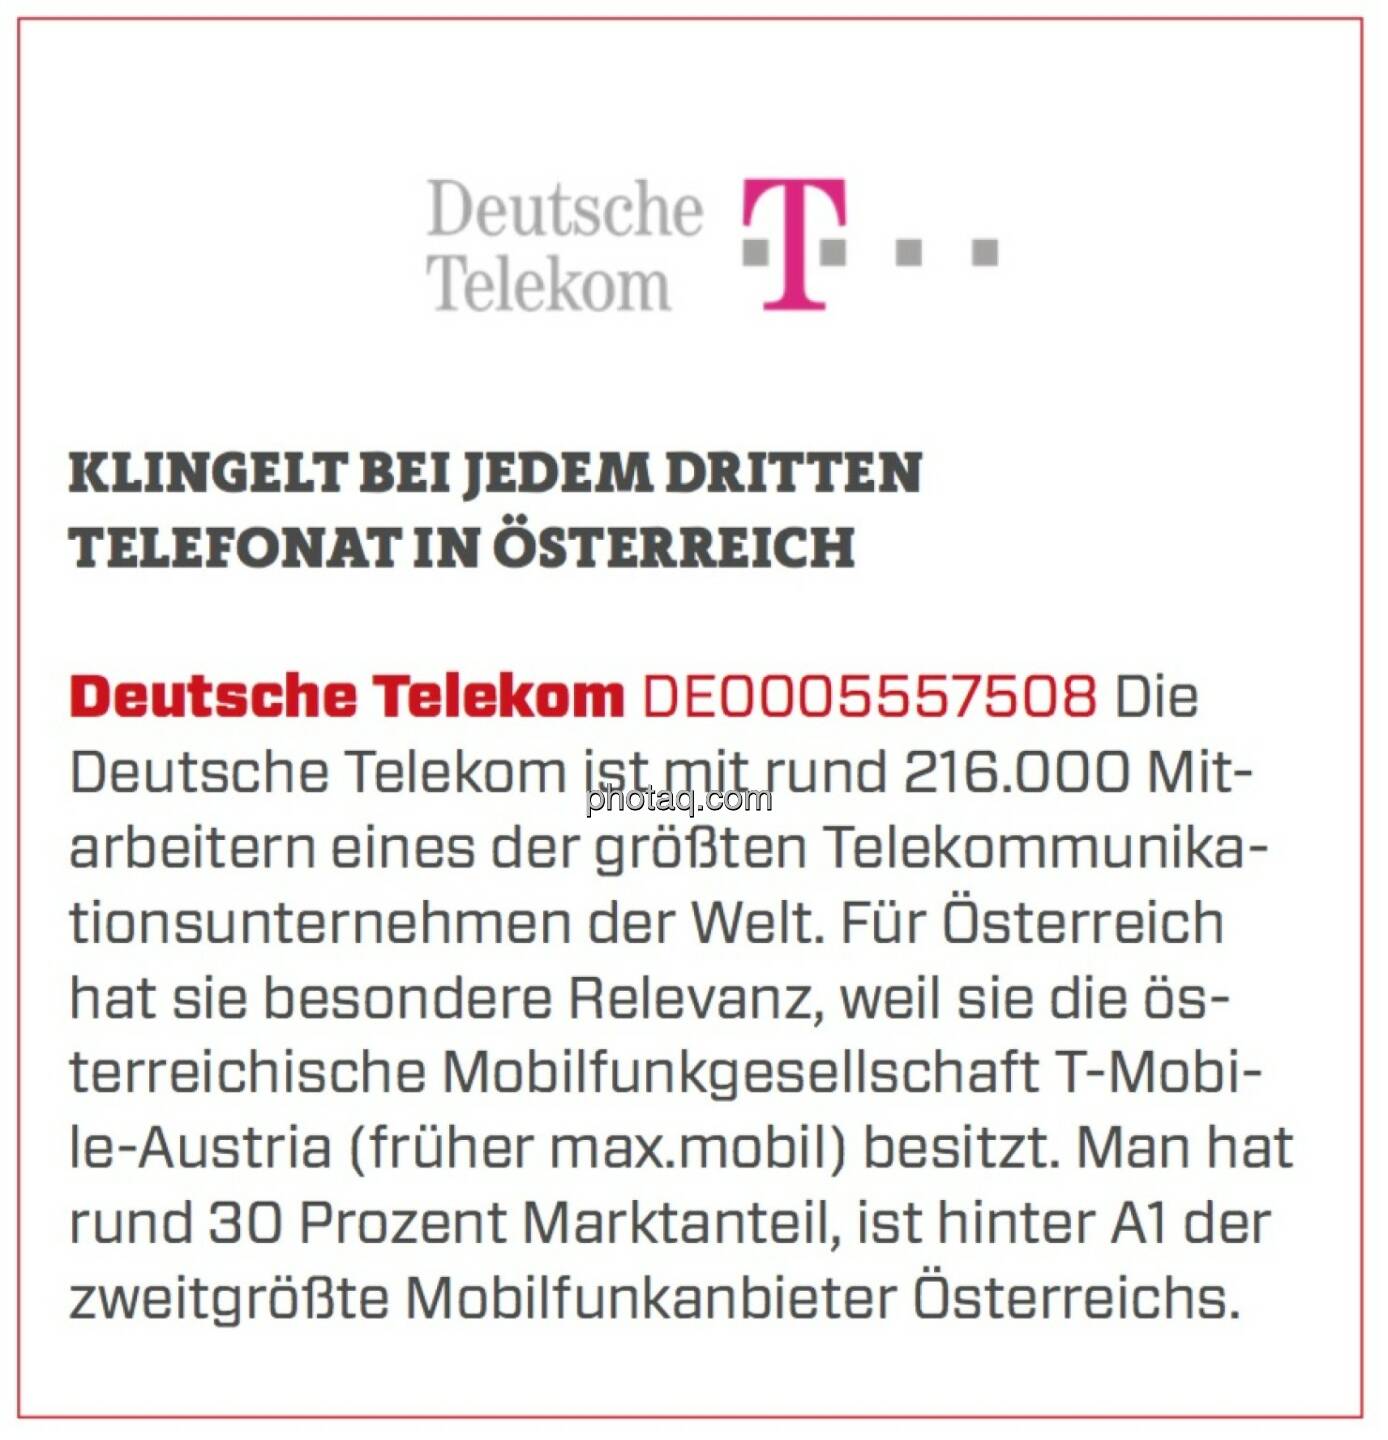 Deutsche Telekom - Klingelt bei jedem dritten Telefonat in Österreich: Die Deutsche Telekom ist mit rund 216.000 Mitarbeitern eines der größten Telekommunikationsunternehmen der Welt. Für Österreich hat sie besondere Relevanz, weil sie die österreichische Mobilfunkgesellschaft T-Mobile-Austria (früher max.mobil) besitzt. Man hat rund 30 Prozent Marktanteil, ist hinter A1 der zweitgrößte Mobilfunkanbieter Österreichs. 